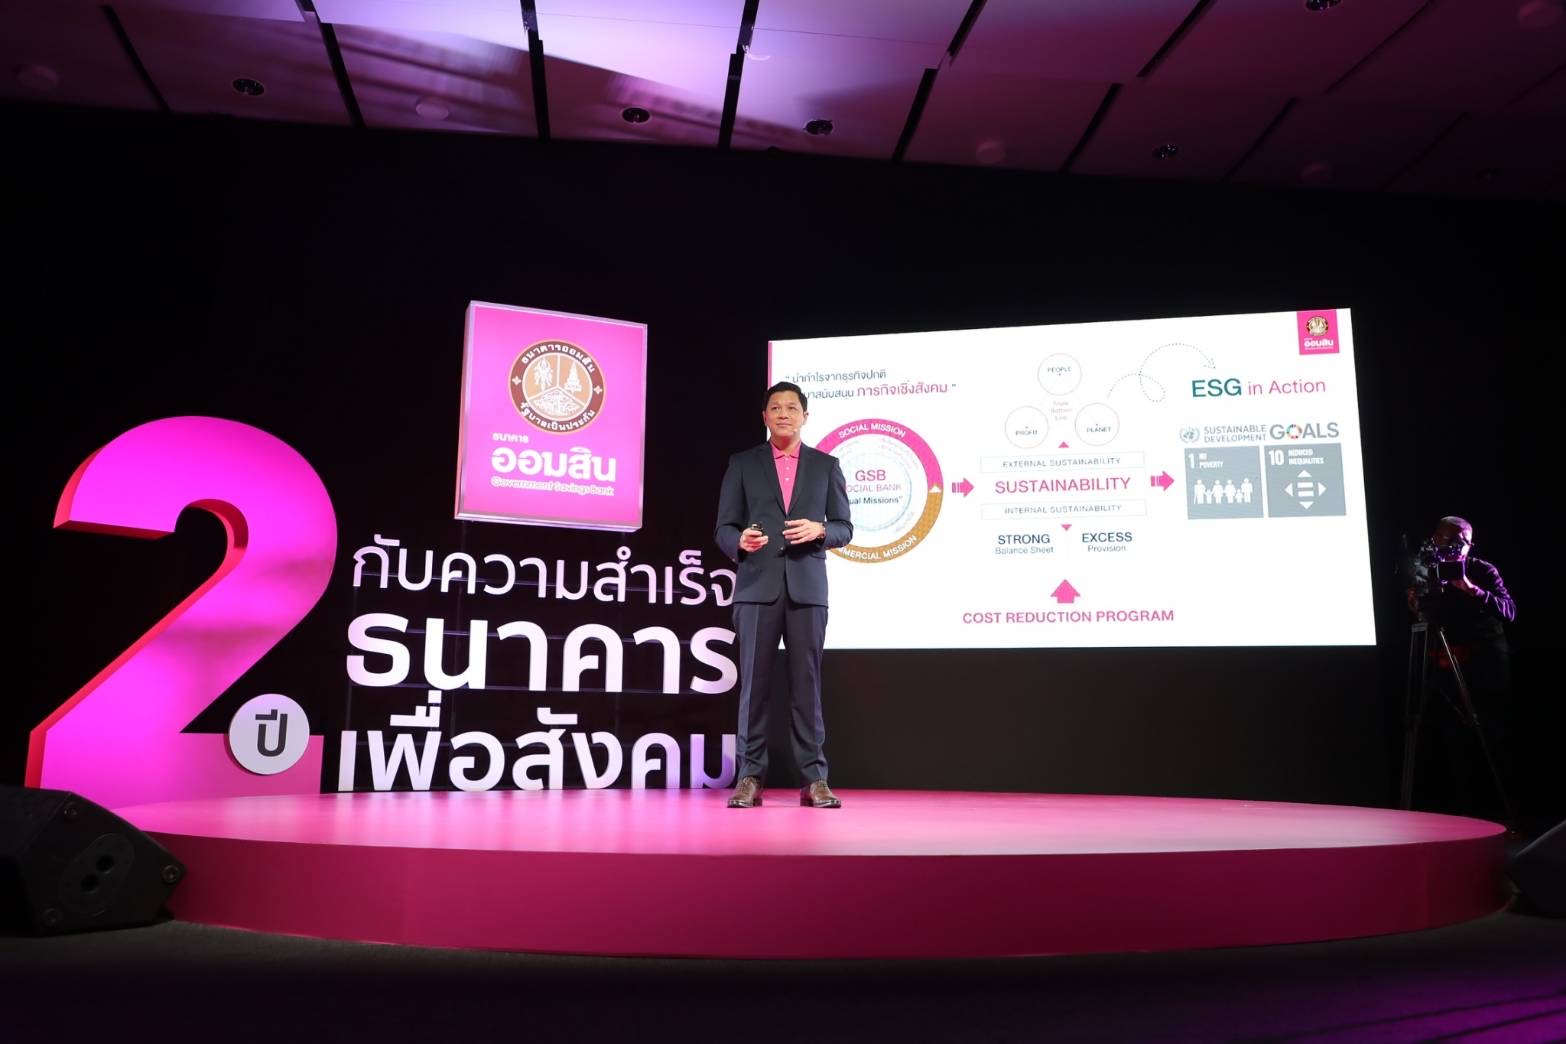 ออมสิน เผย ครบ 2 ปีแห่งความสำเร็จ “ธนาคารเพื่อสังคม” ช่วยคนไทยฝ่าวิกฤต